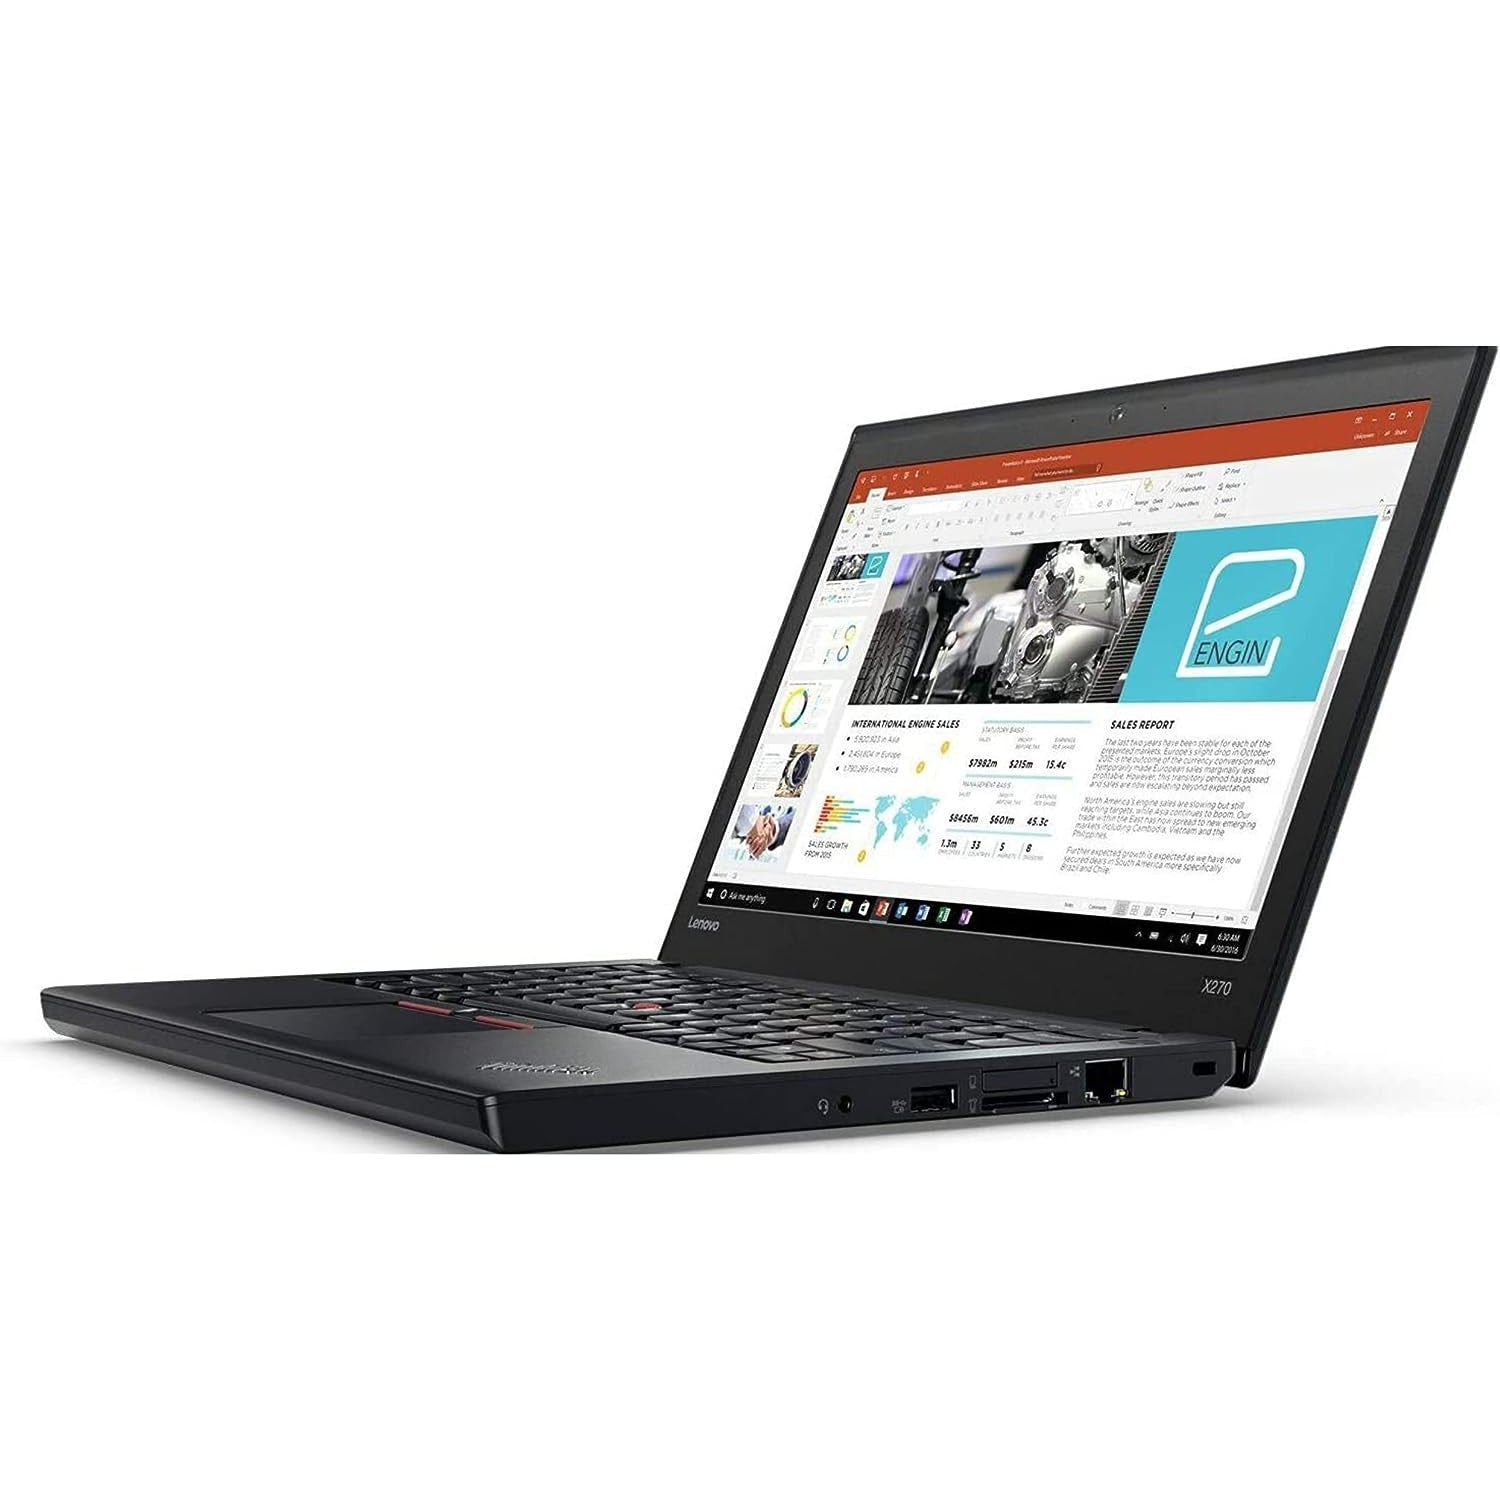 Lenovo ThinkPad X270 Intel Core i5-6300U 8GB RAM 256GB SSD 12.5" - Black